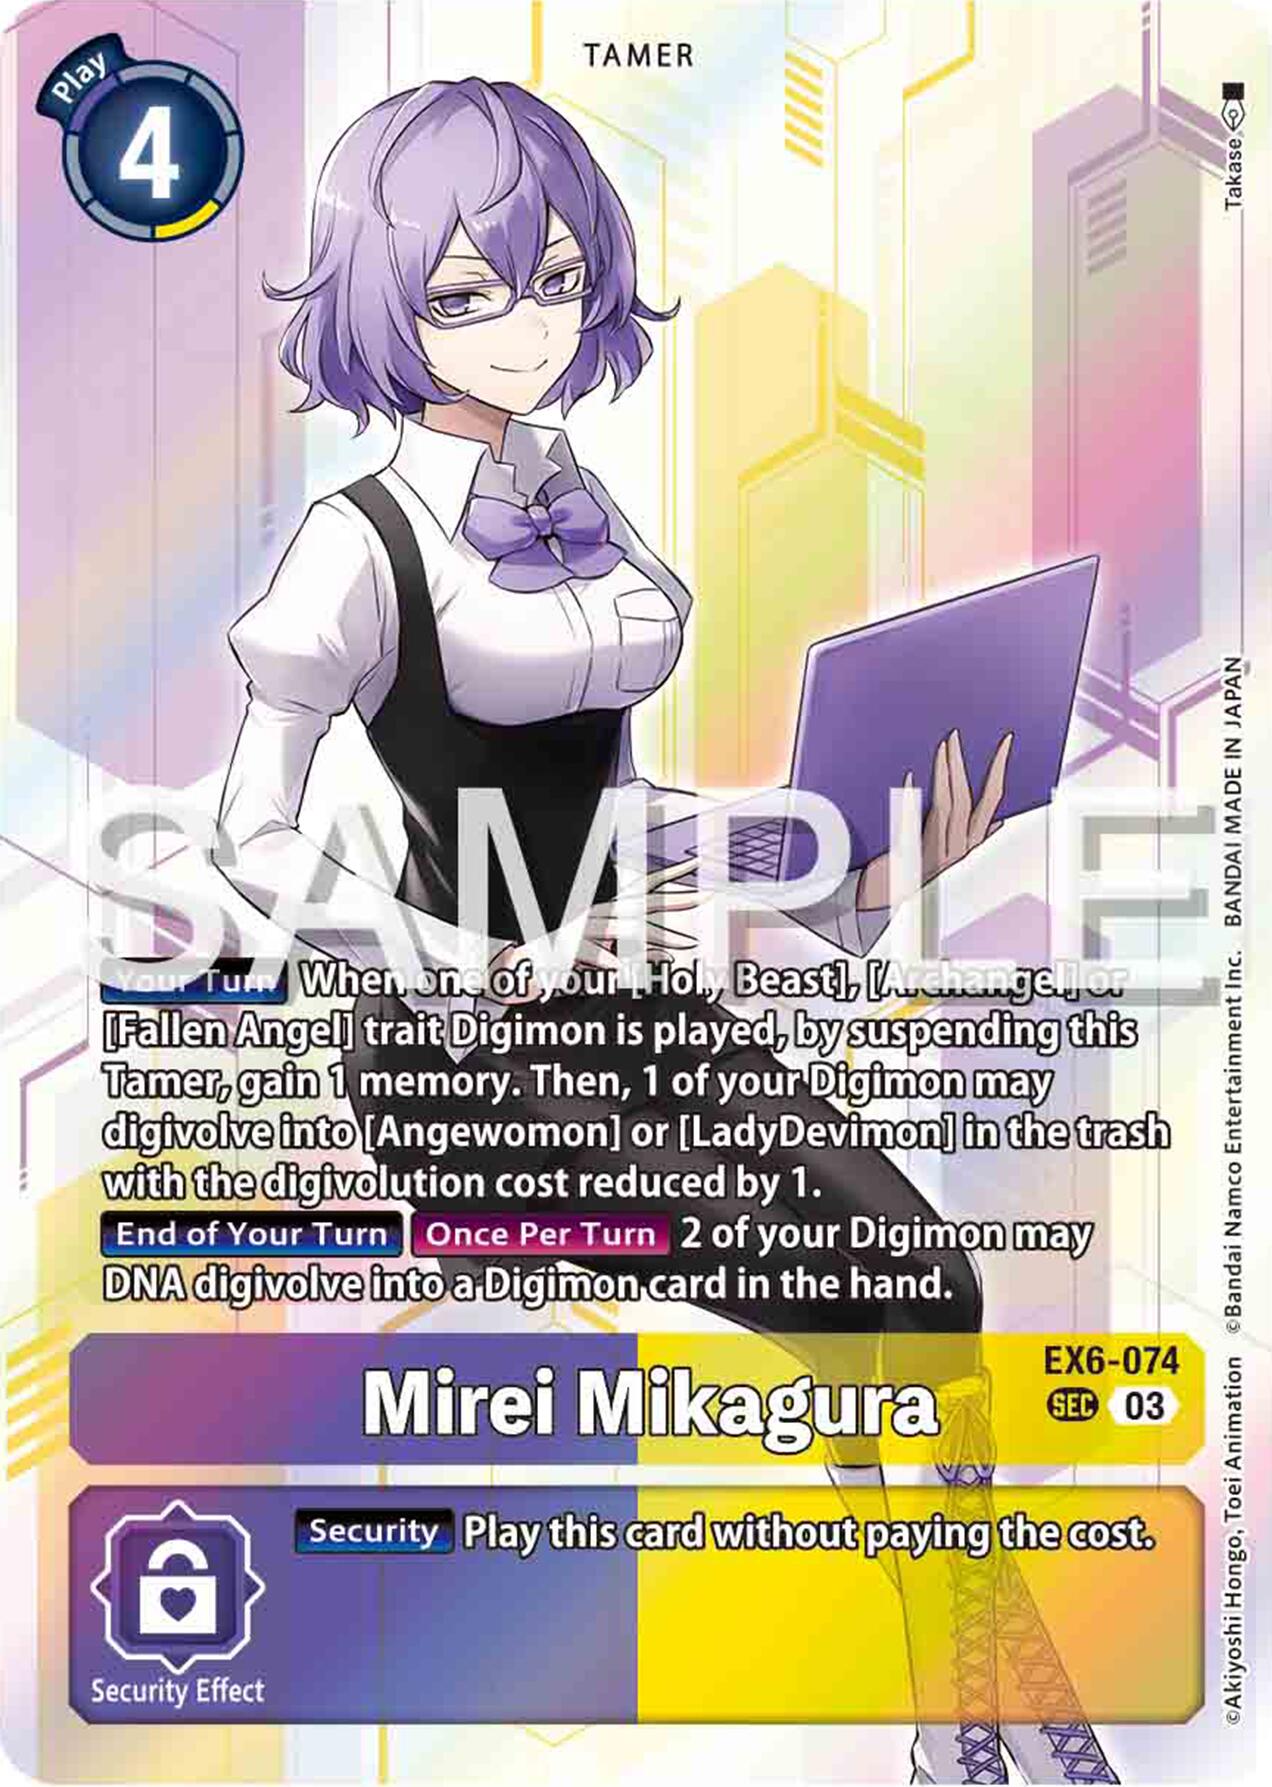 Mirei Mikagura [EX6-074] [Infernal Ascension] | Shuffle n Cut Hobbies & Games